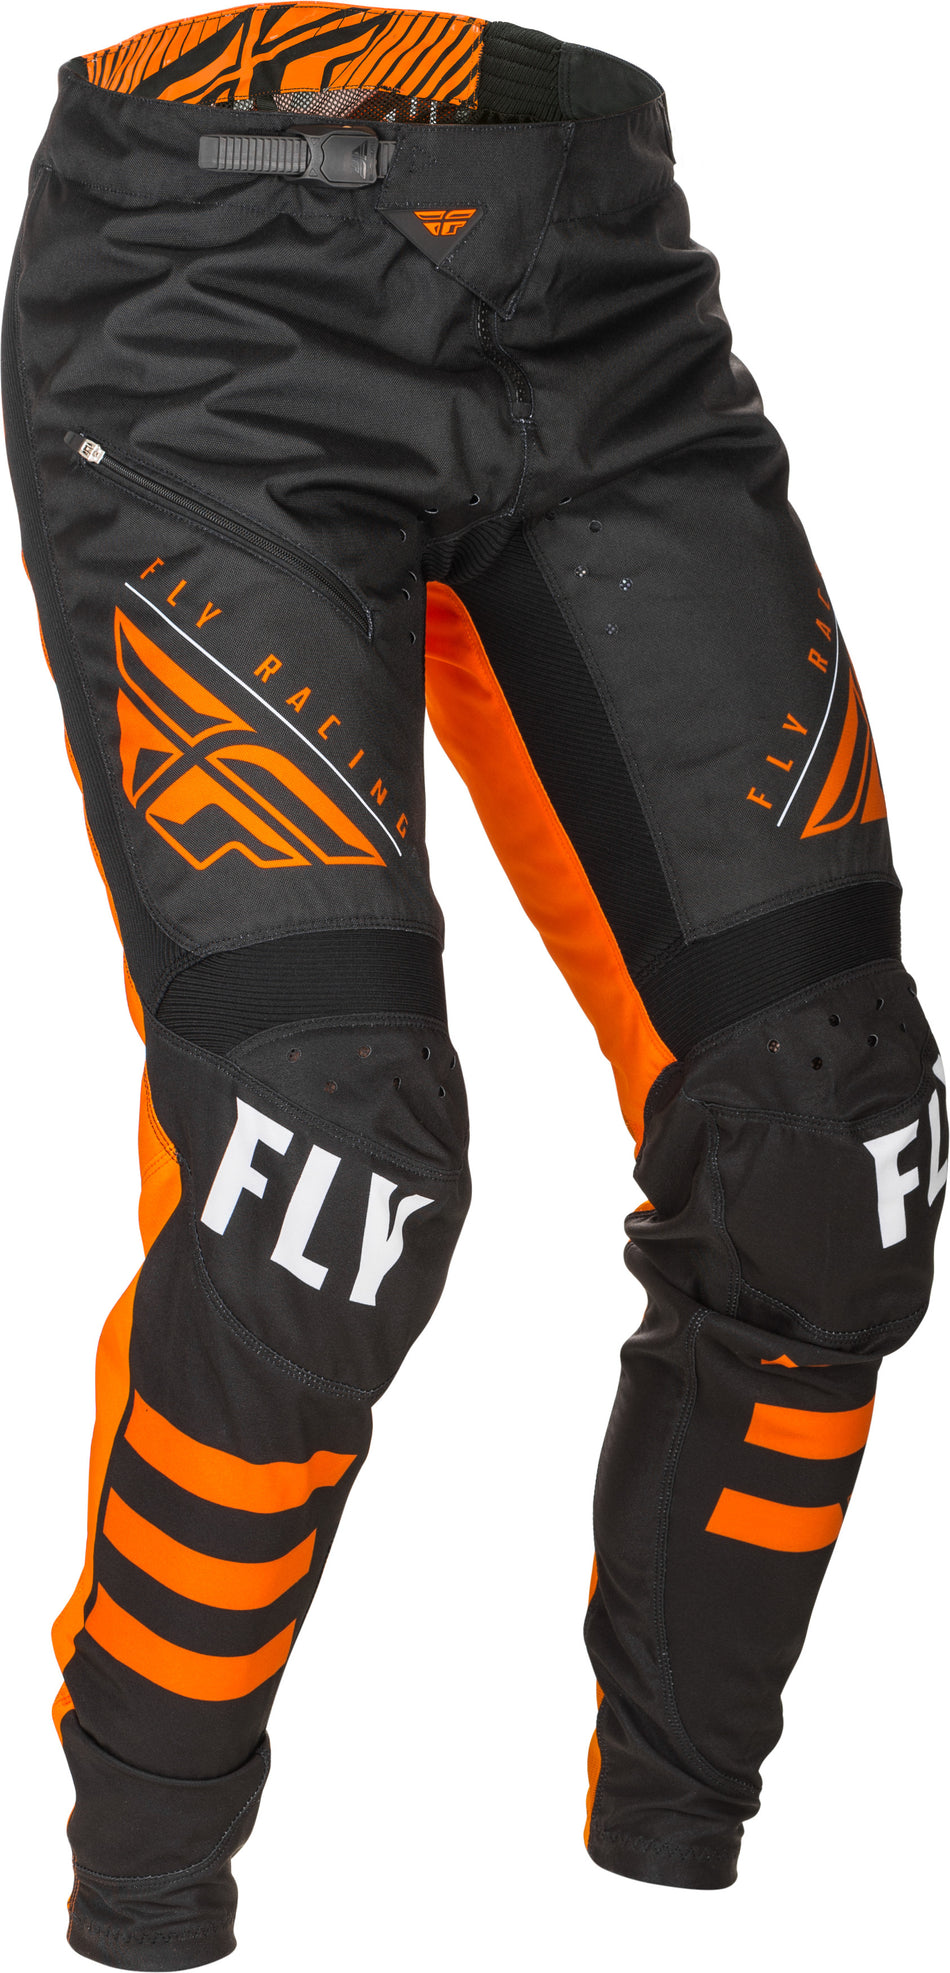 FLY RACING Kinetic Bicycle Pants Black/Orange Sz 28 373-04728